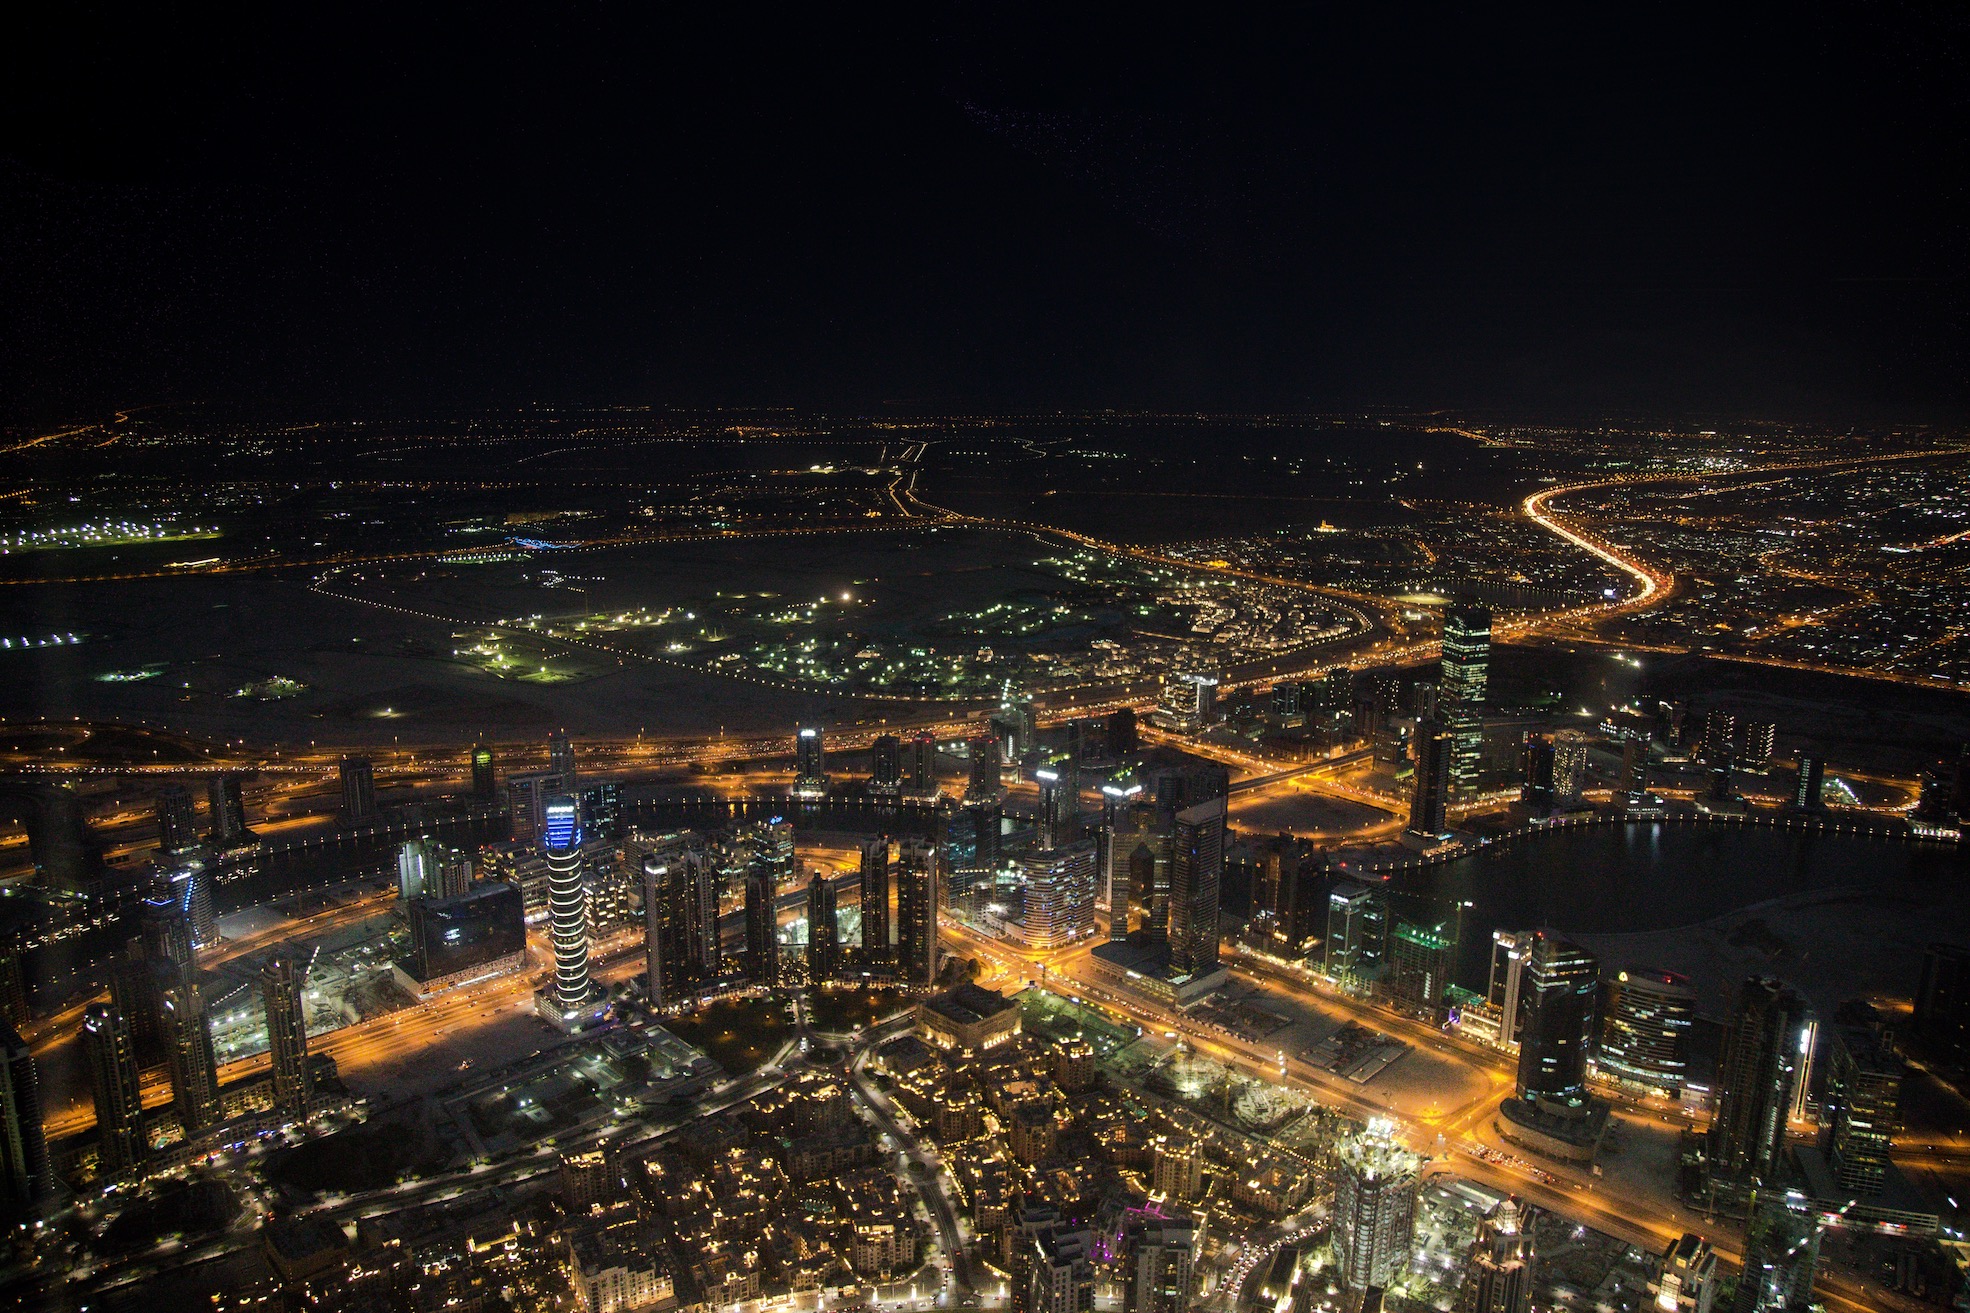 An image of a beautiful Dubai skyline.